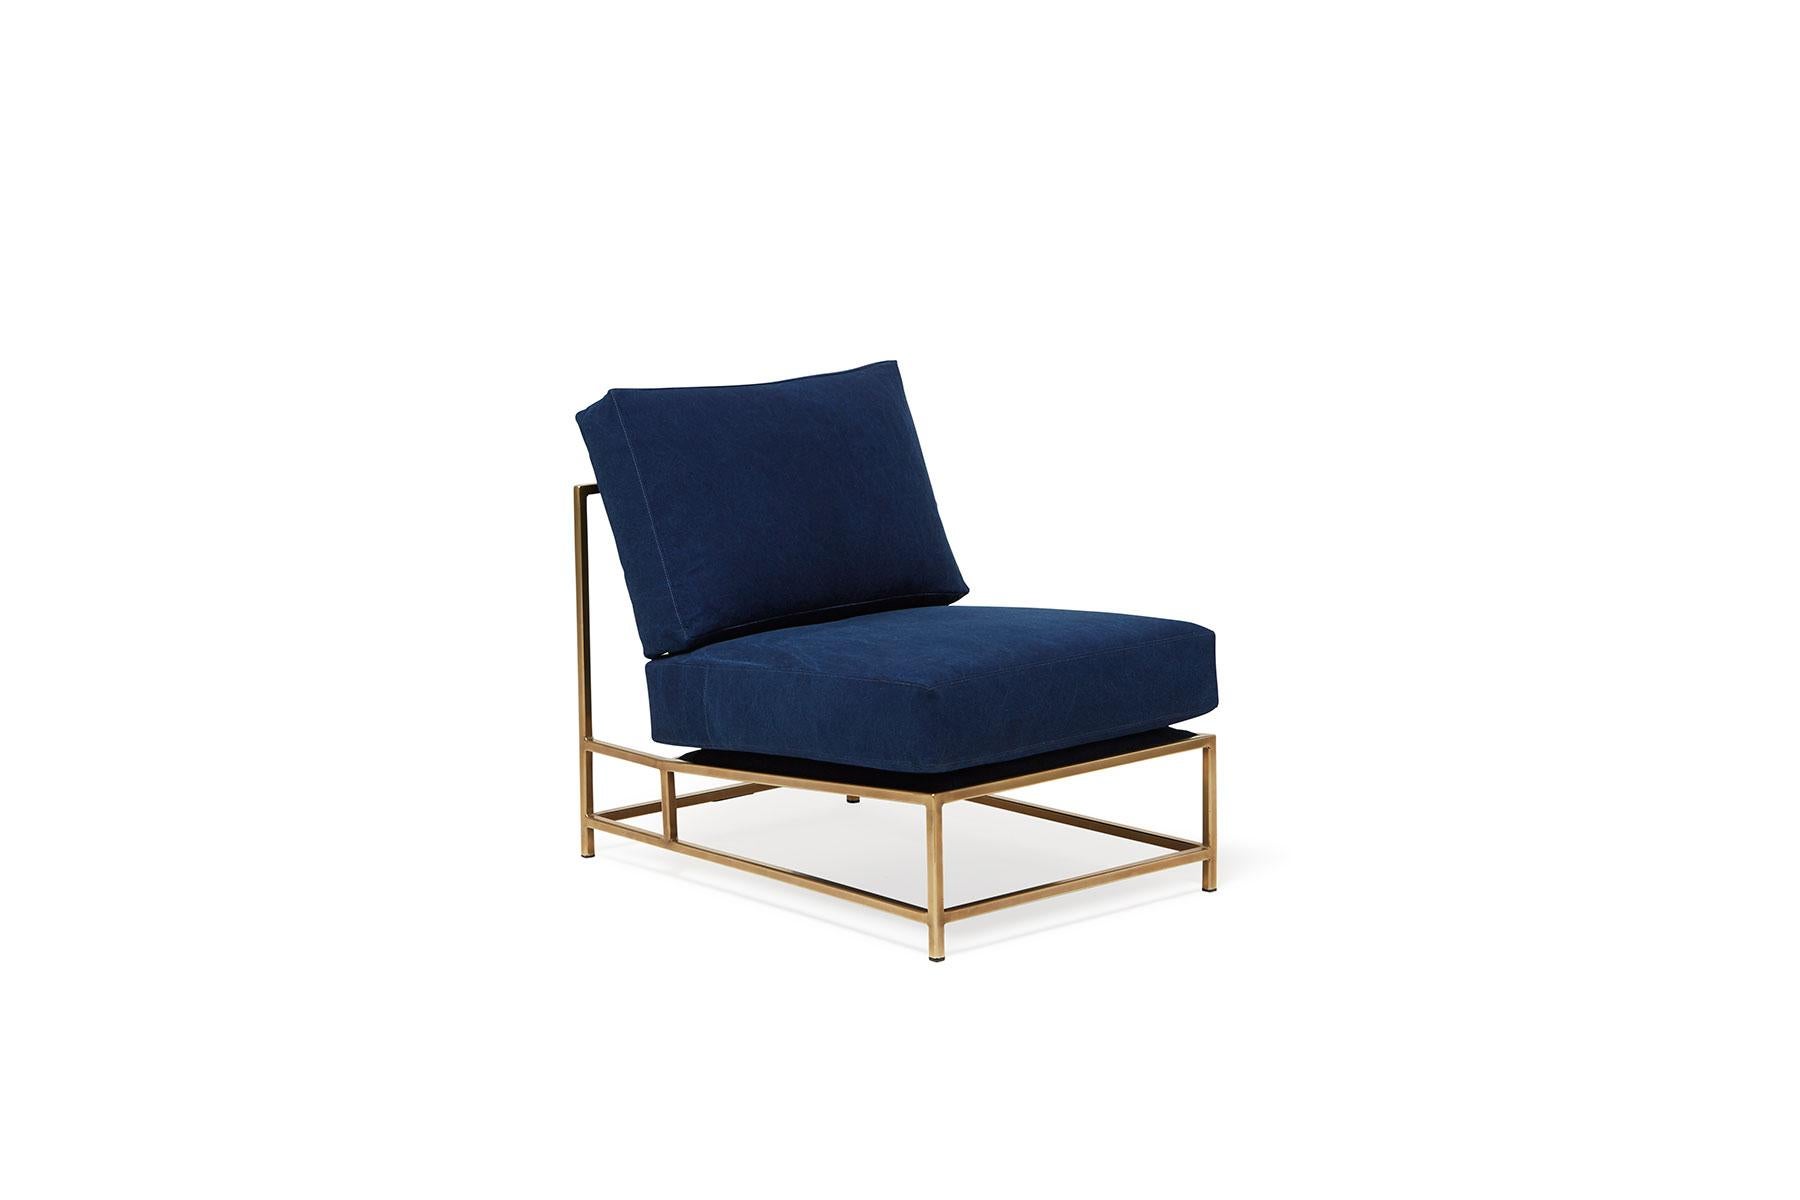 Der elegante und raffinierte Inheritance Chair ist eine großartige Ergänzung für fast jeden Raum. 

Inspiriert von einer abgenutzten Jeans und in Zusammenarbeit mit dem Team von Simon Miller, USA, wird unser indigoblauer Baumwollstoff in einem